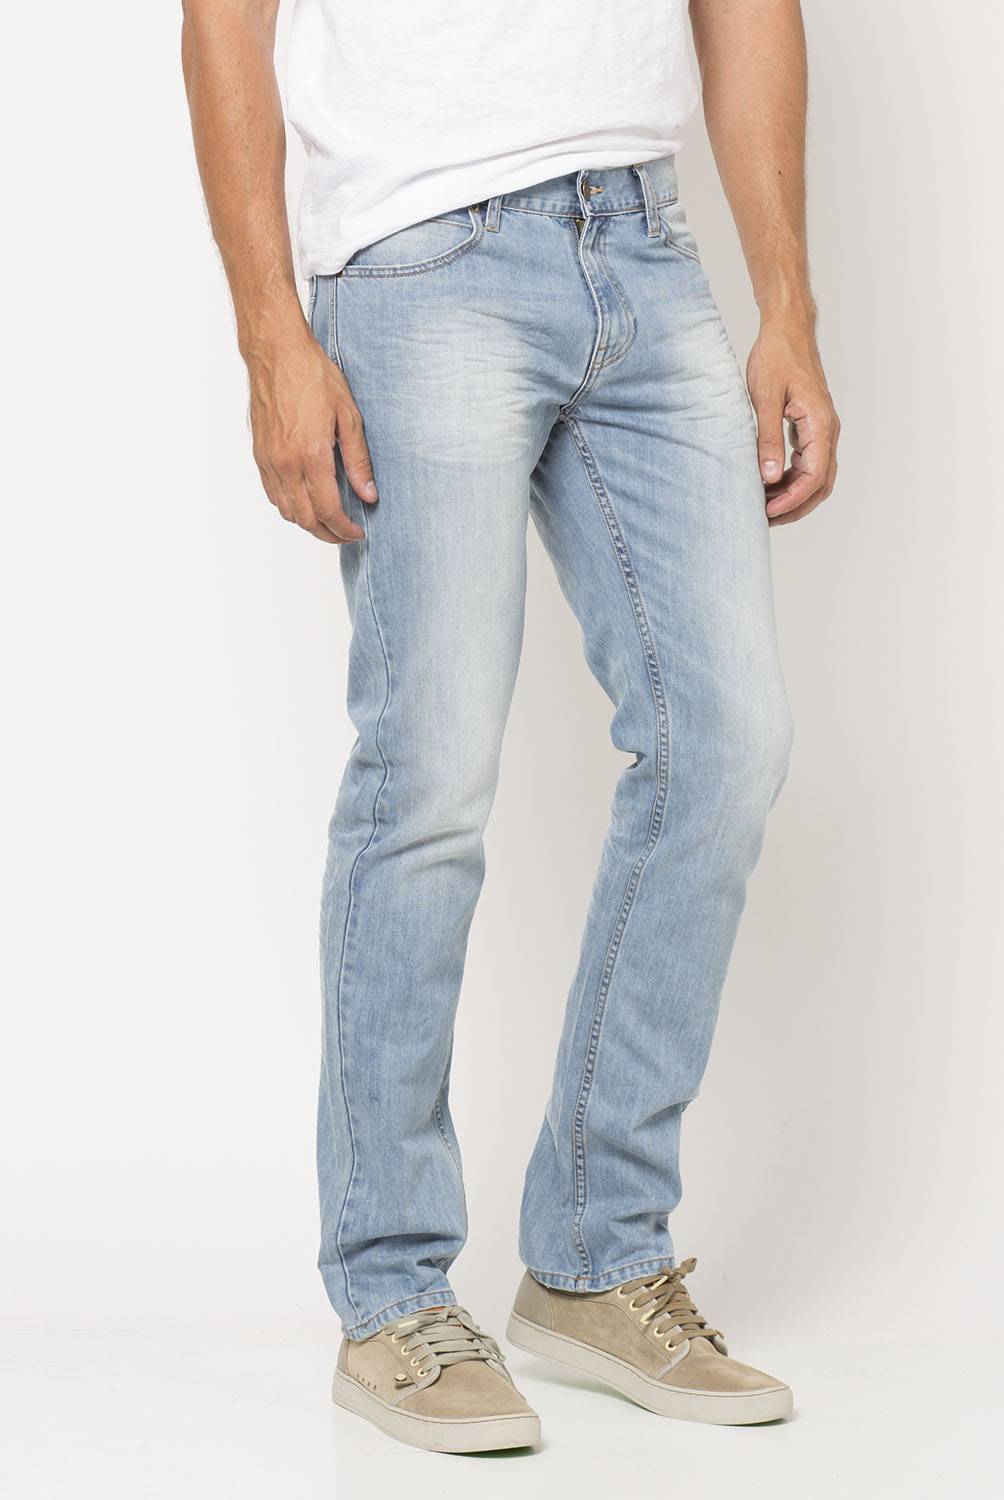 LEE - Jeans Slim Fit Hombre